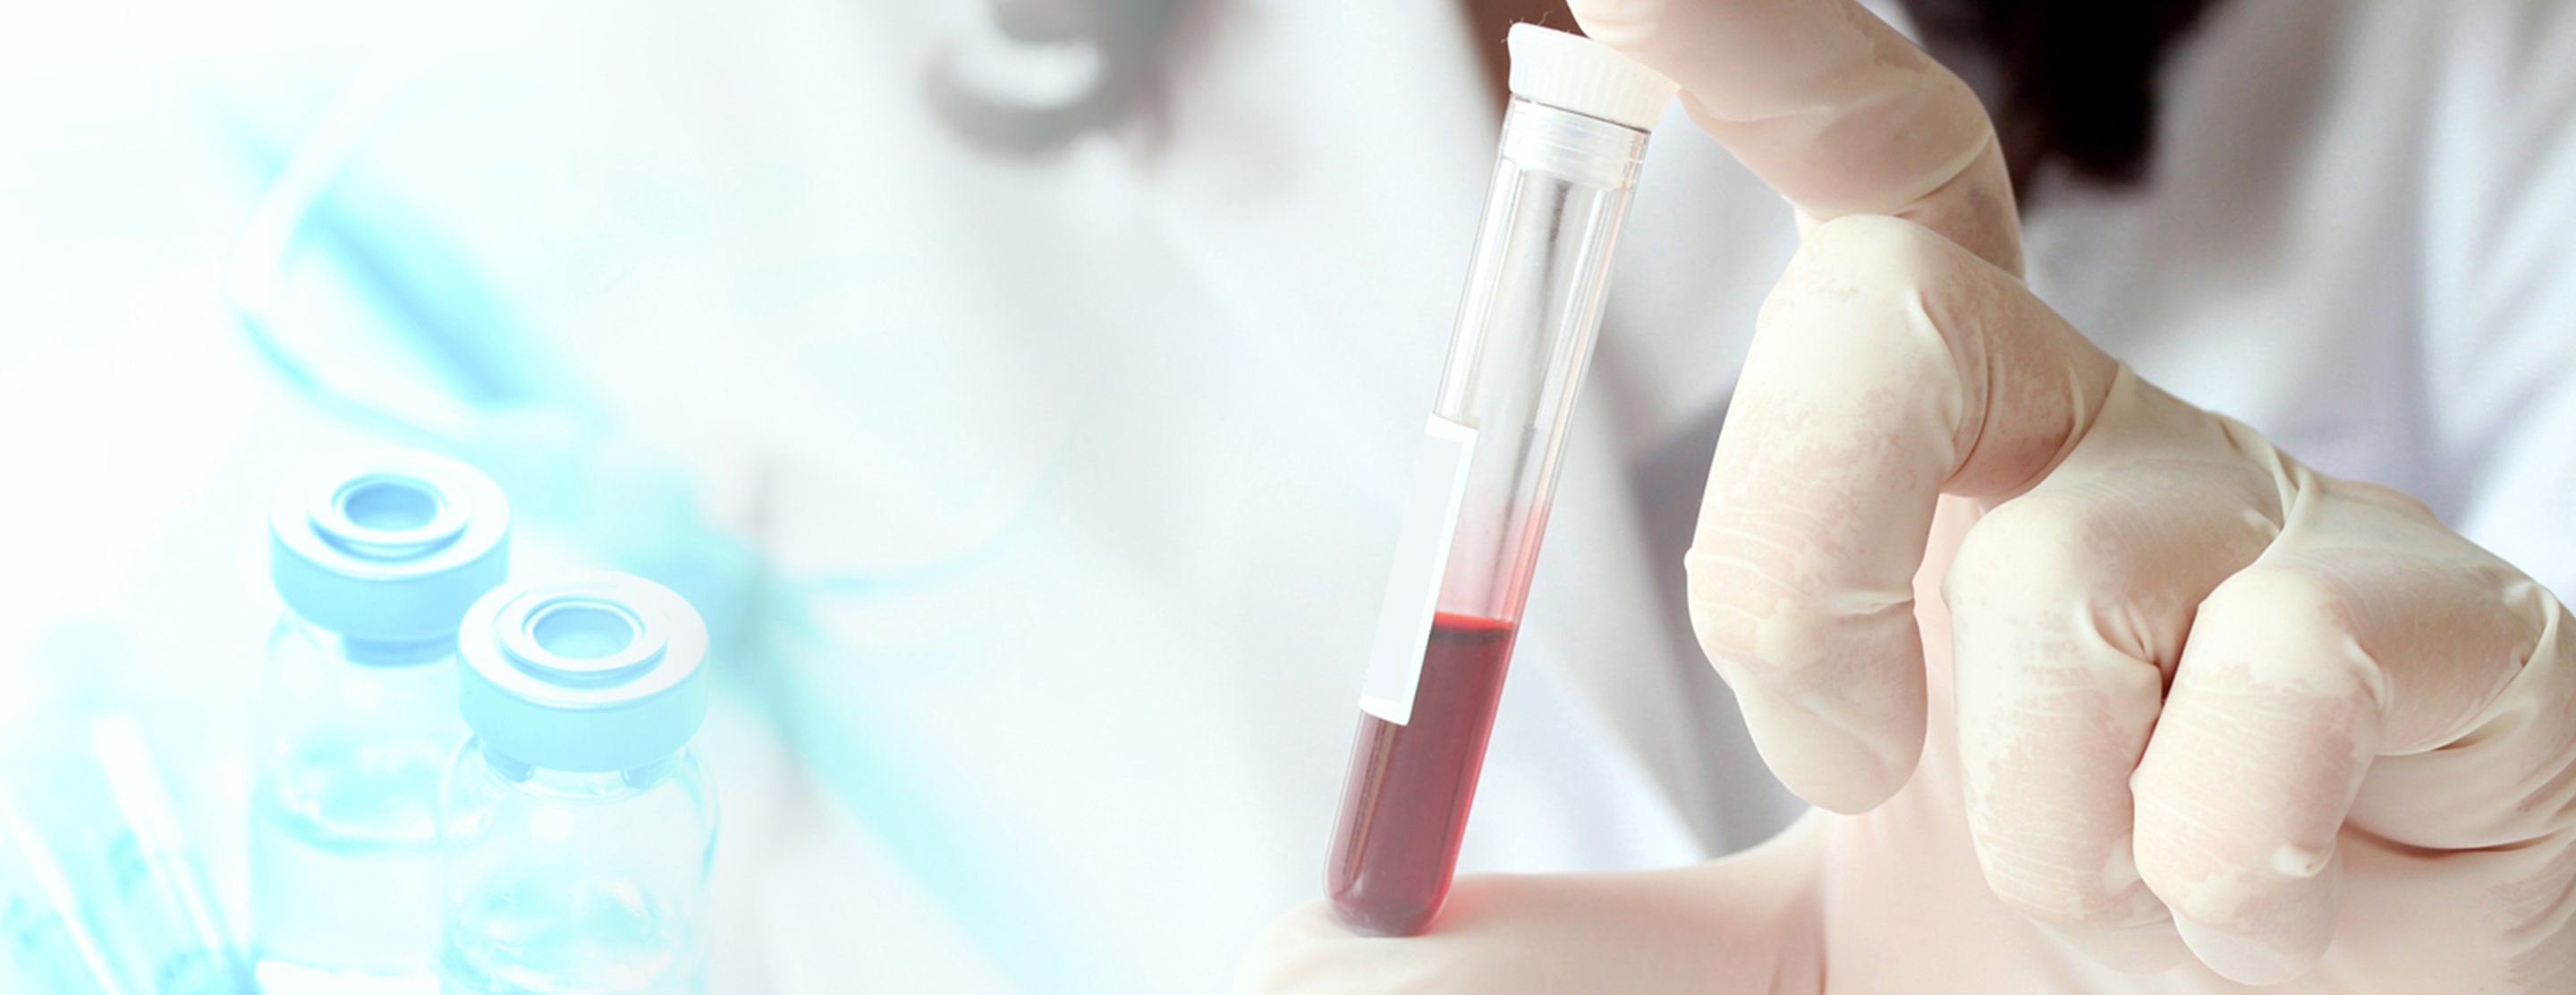 Генетический тест крови. Химия крови. Исследовать осмолярность крови в лаборатории. Пролактин. Пробирки на хеликобактер пилори под кровь.